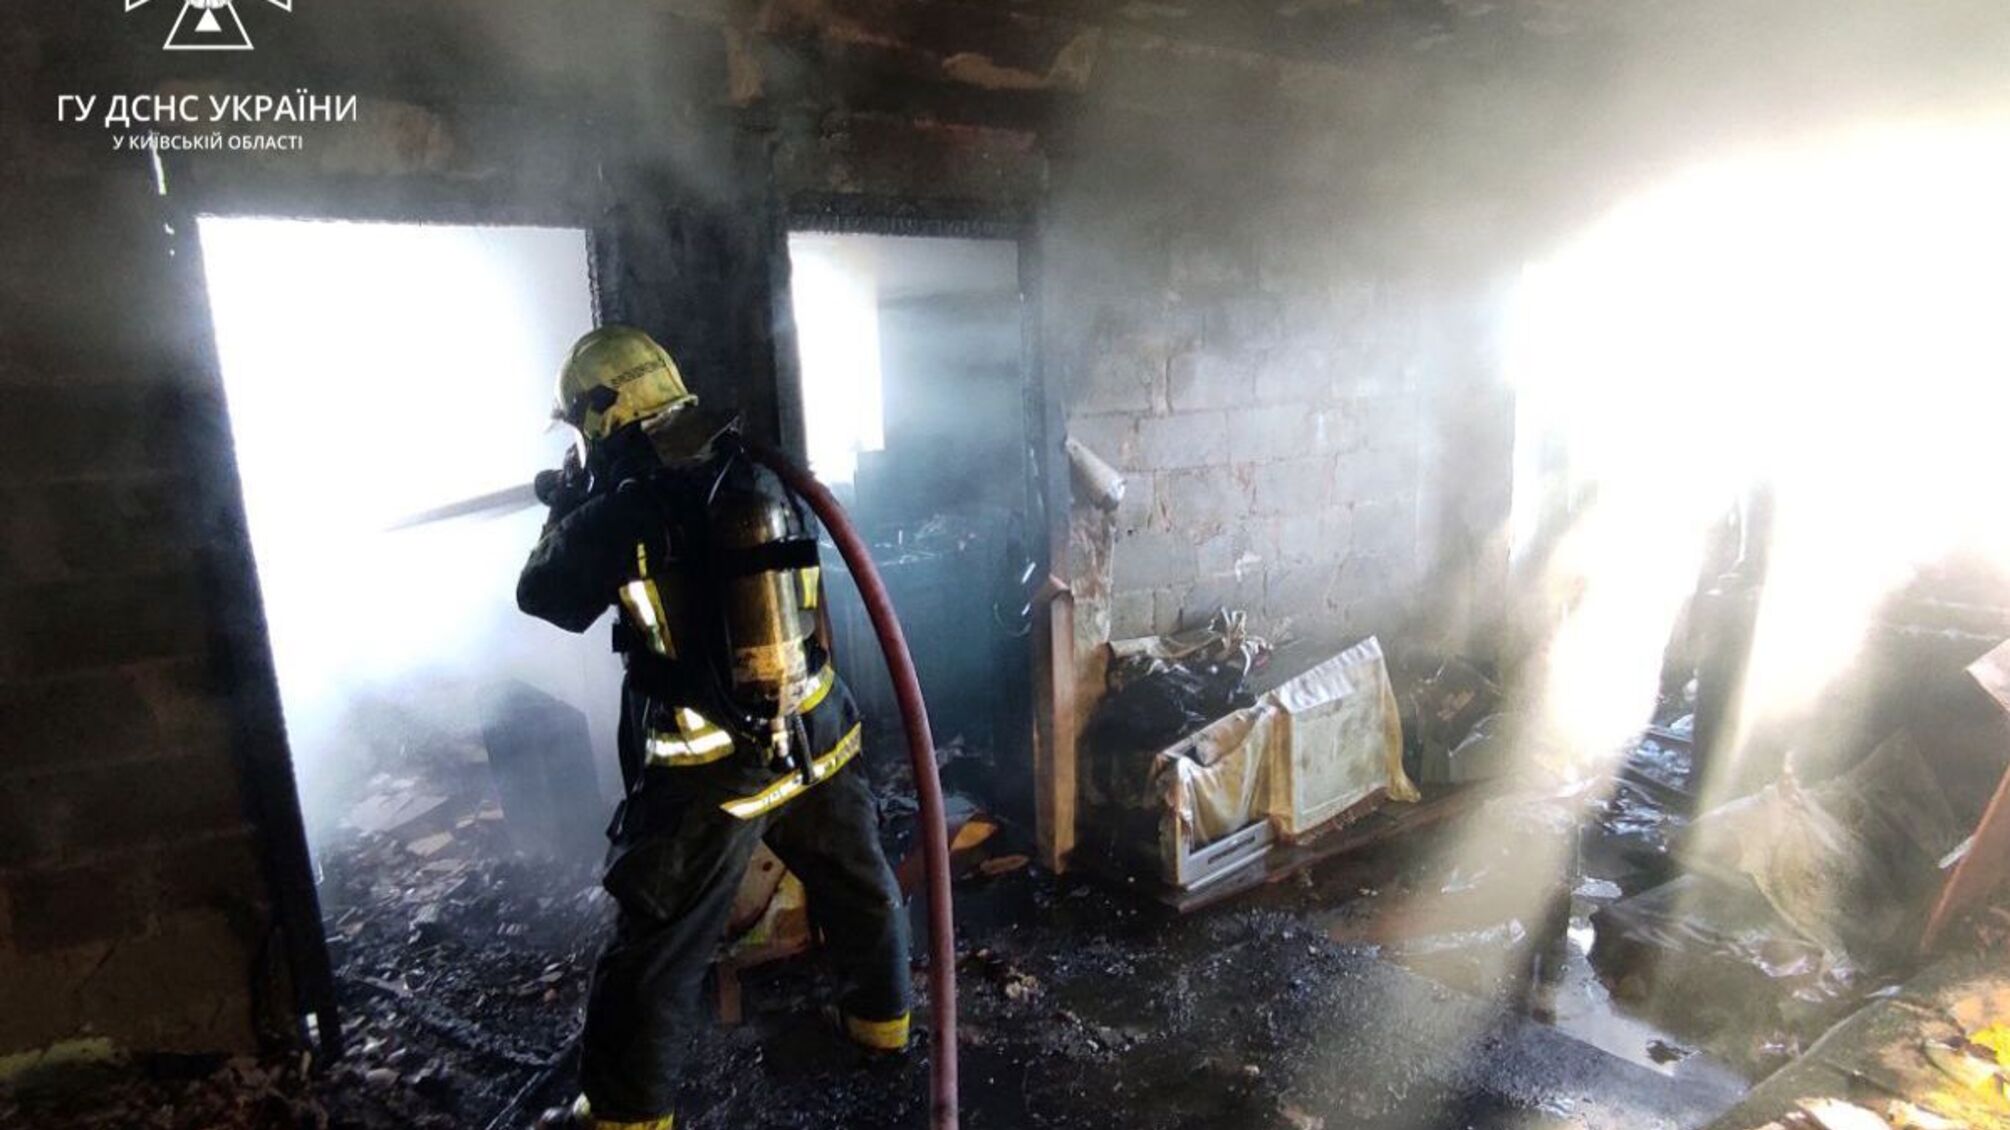 Під Києвом сталася пожежа: рятувальники встигли витягти з вогню чоловіка